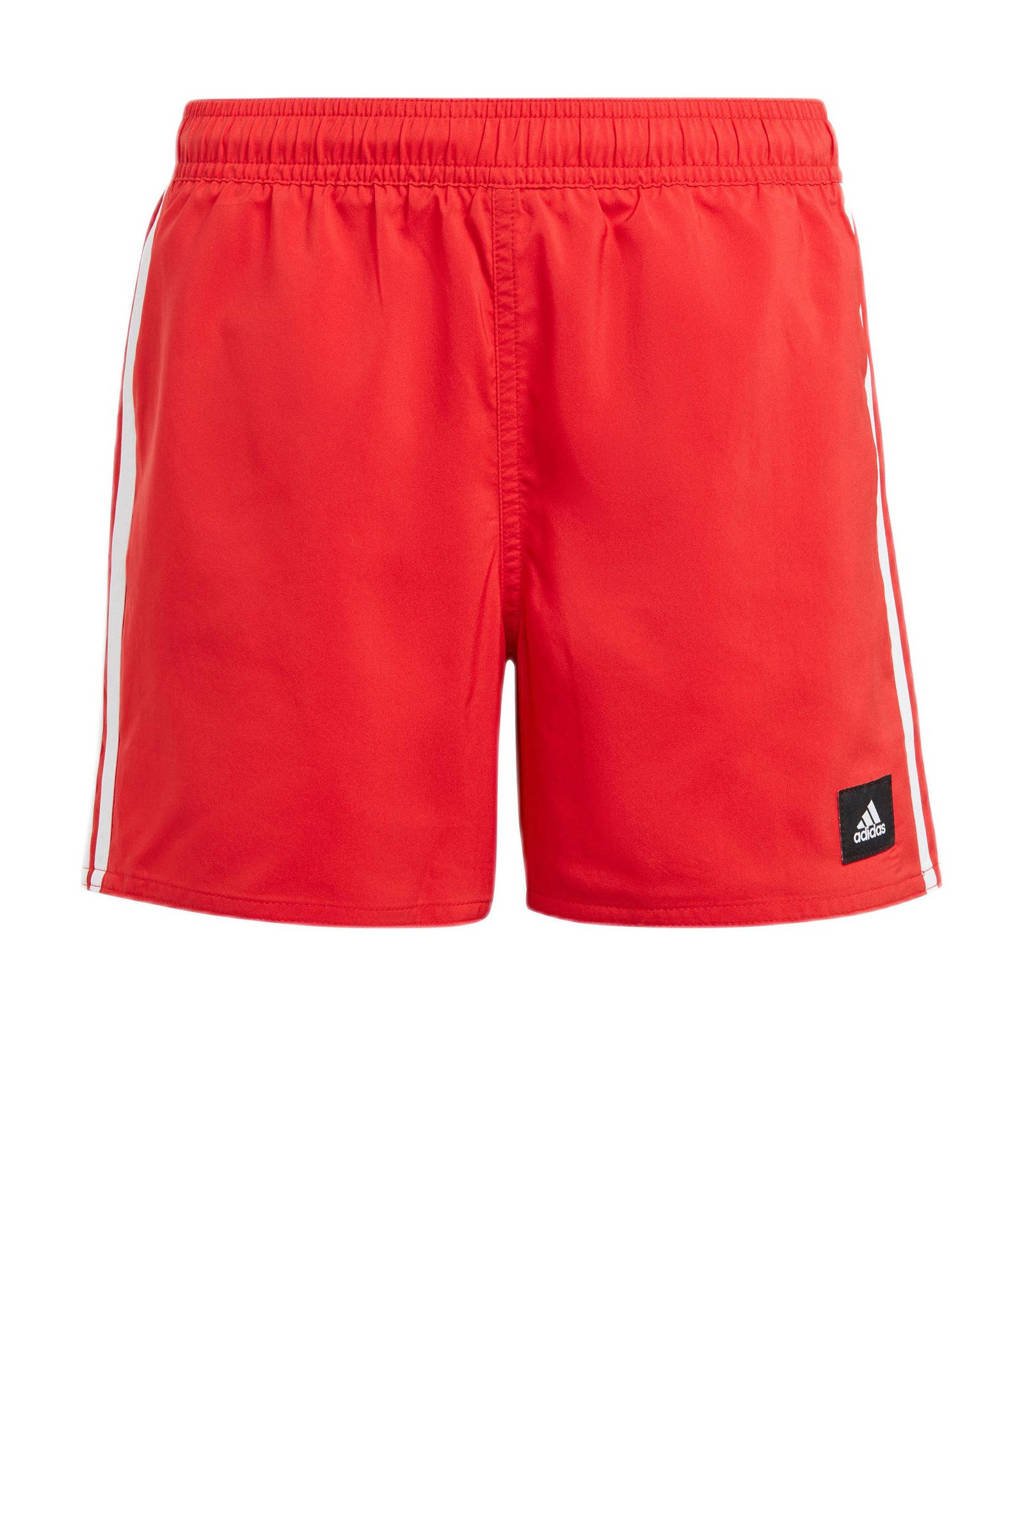 in de tussentijd Gorgelen Mevrouw adidas Performance zwemshort rood/wit | wehkamp